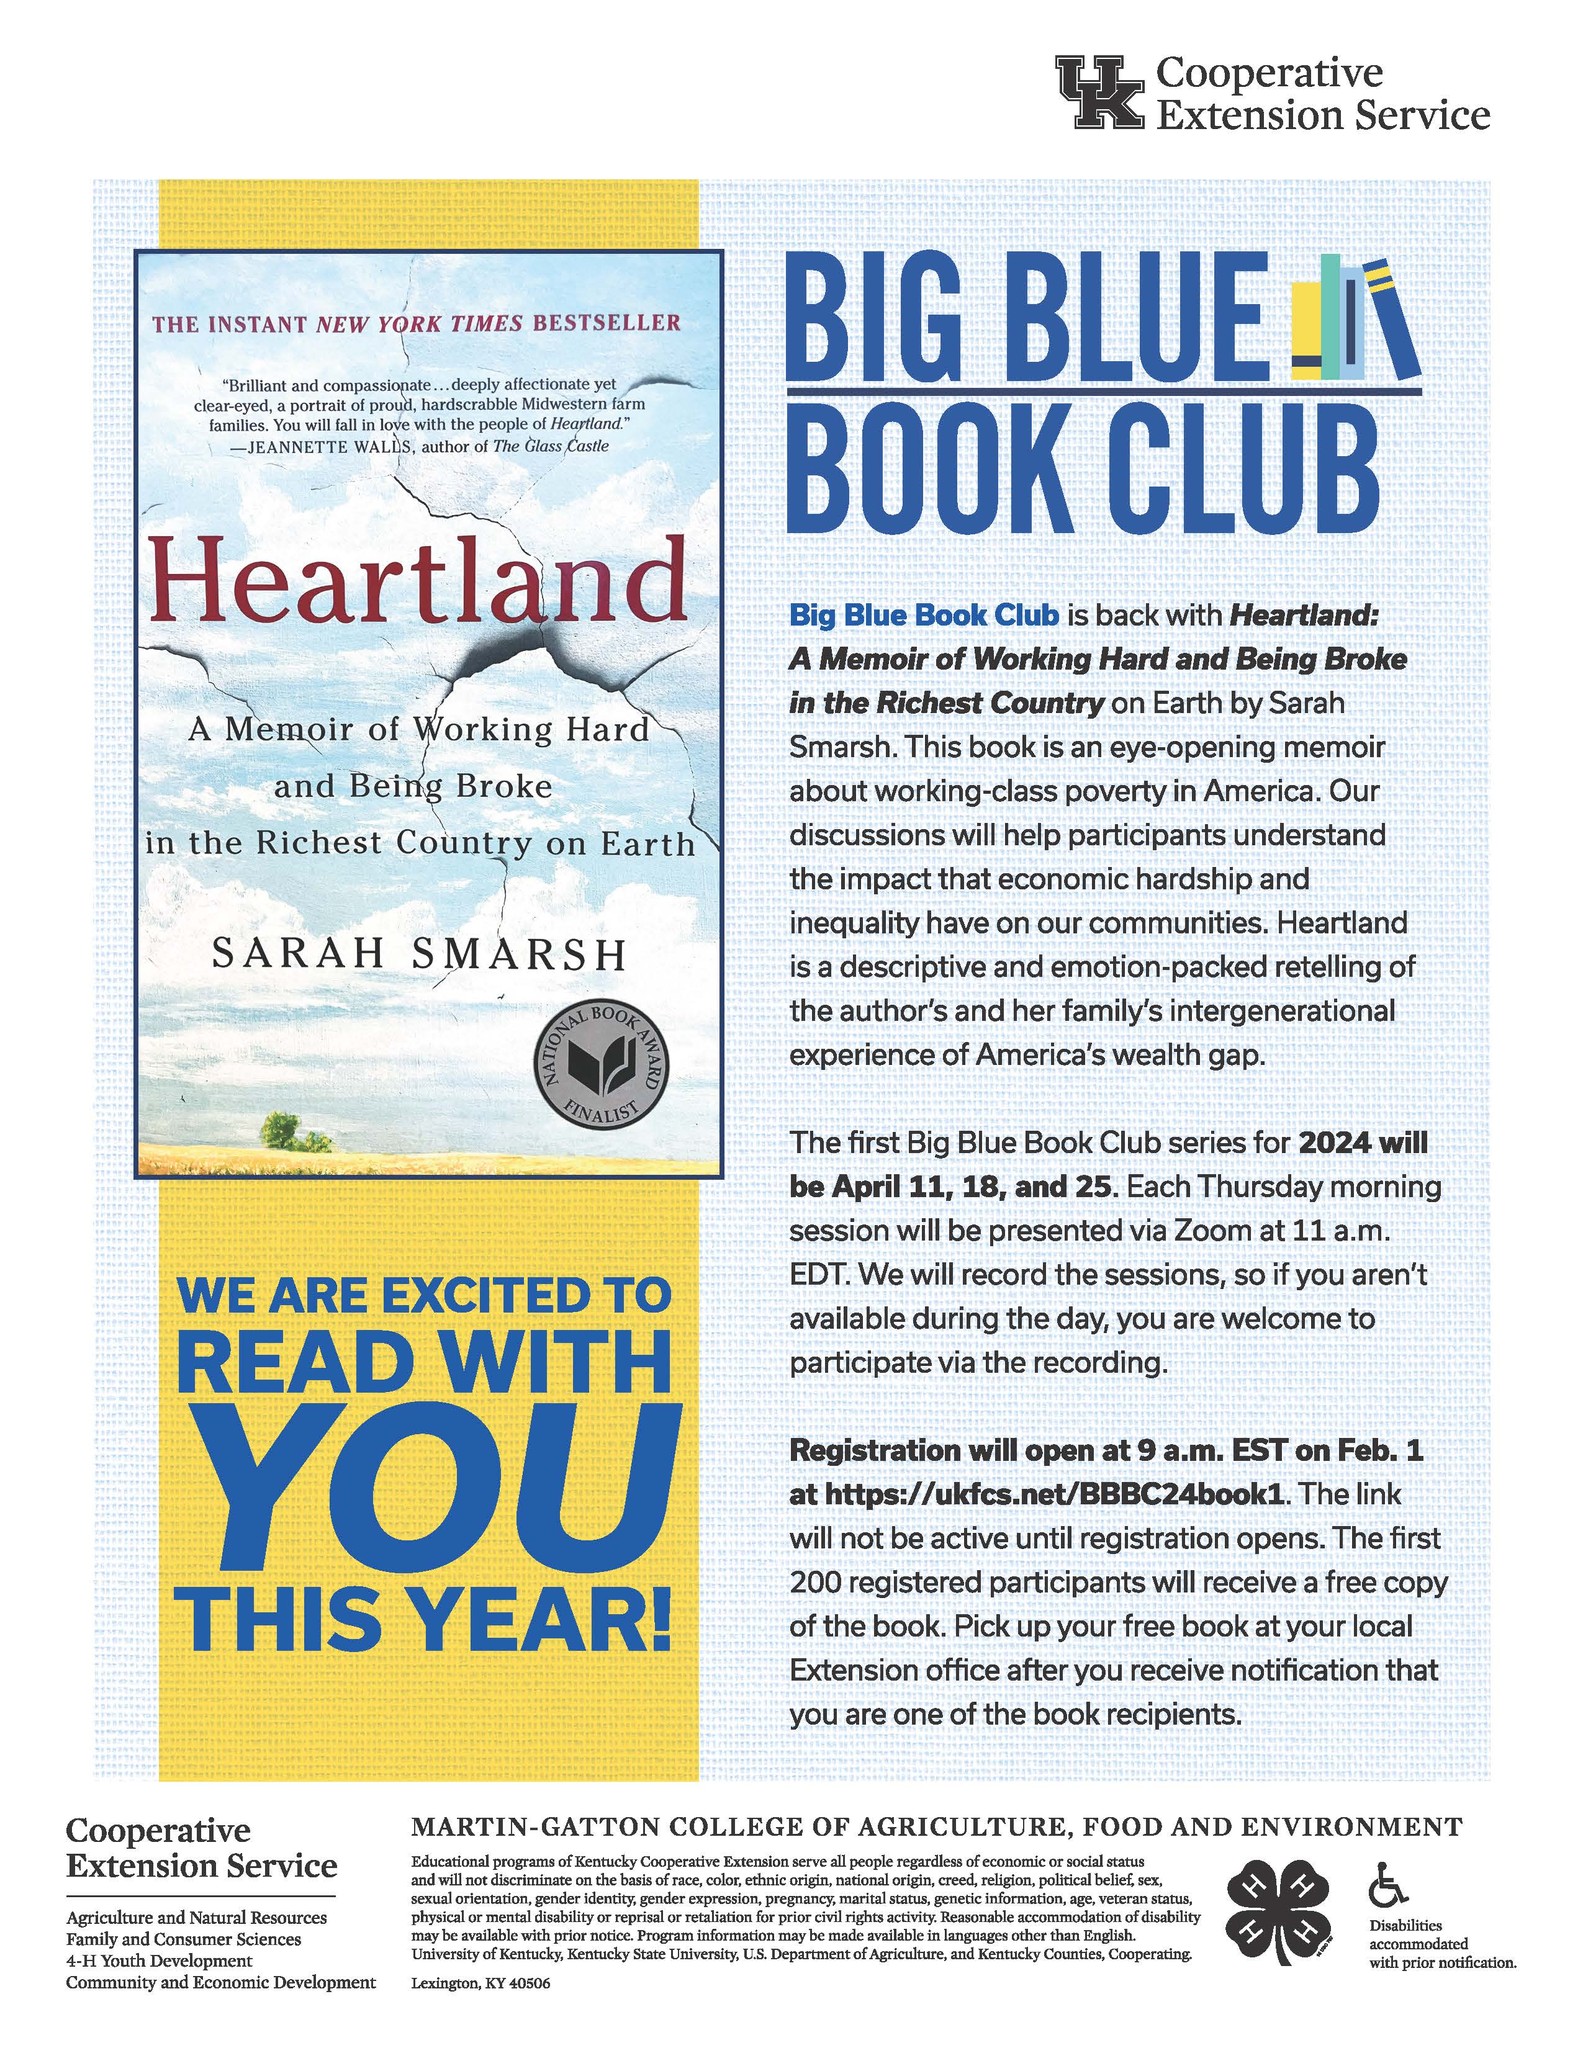 Big Blue Book Club Flyer